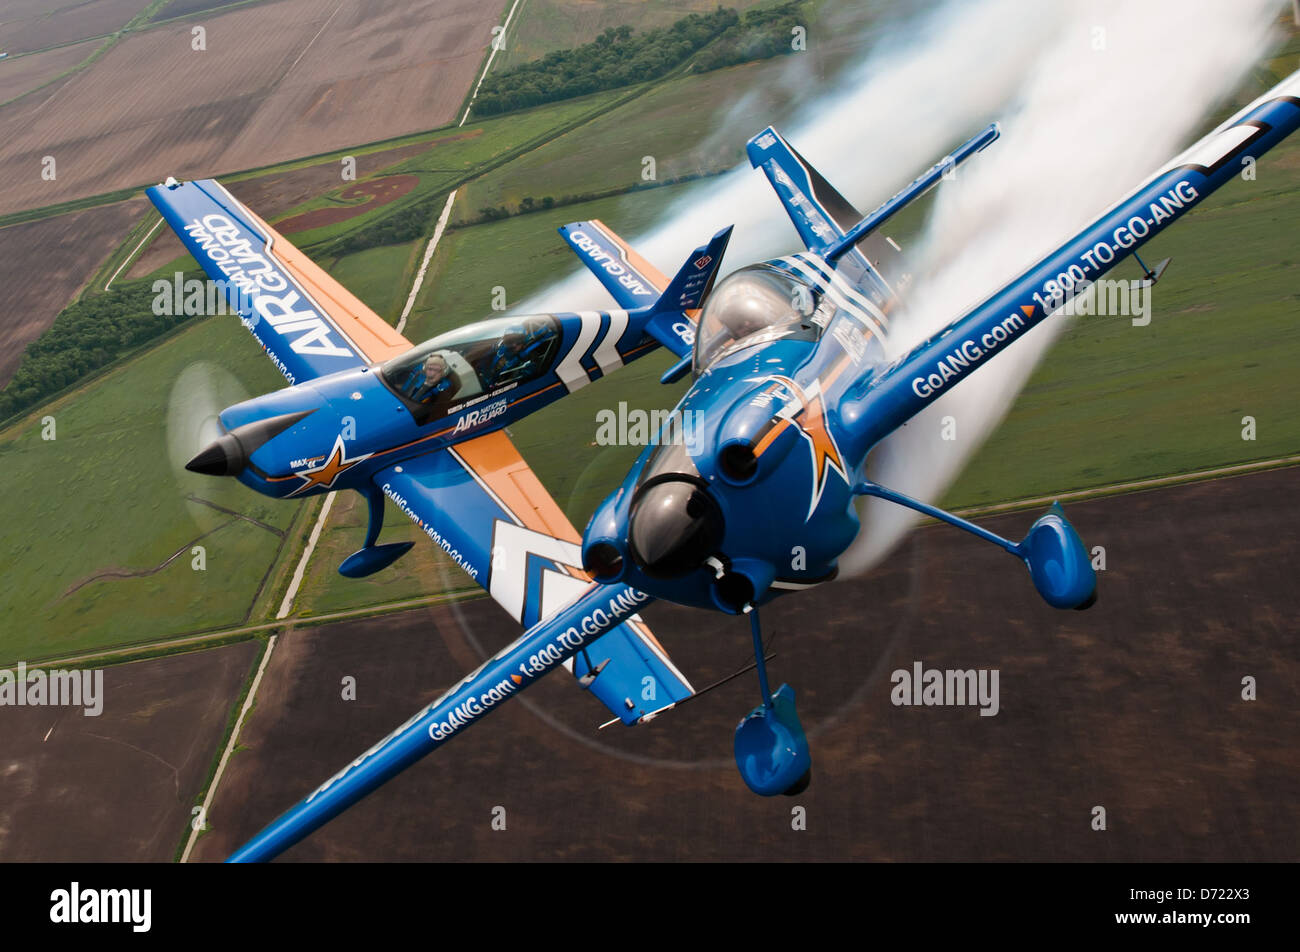 aerobatic display aircraft Stock Photo